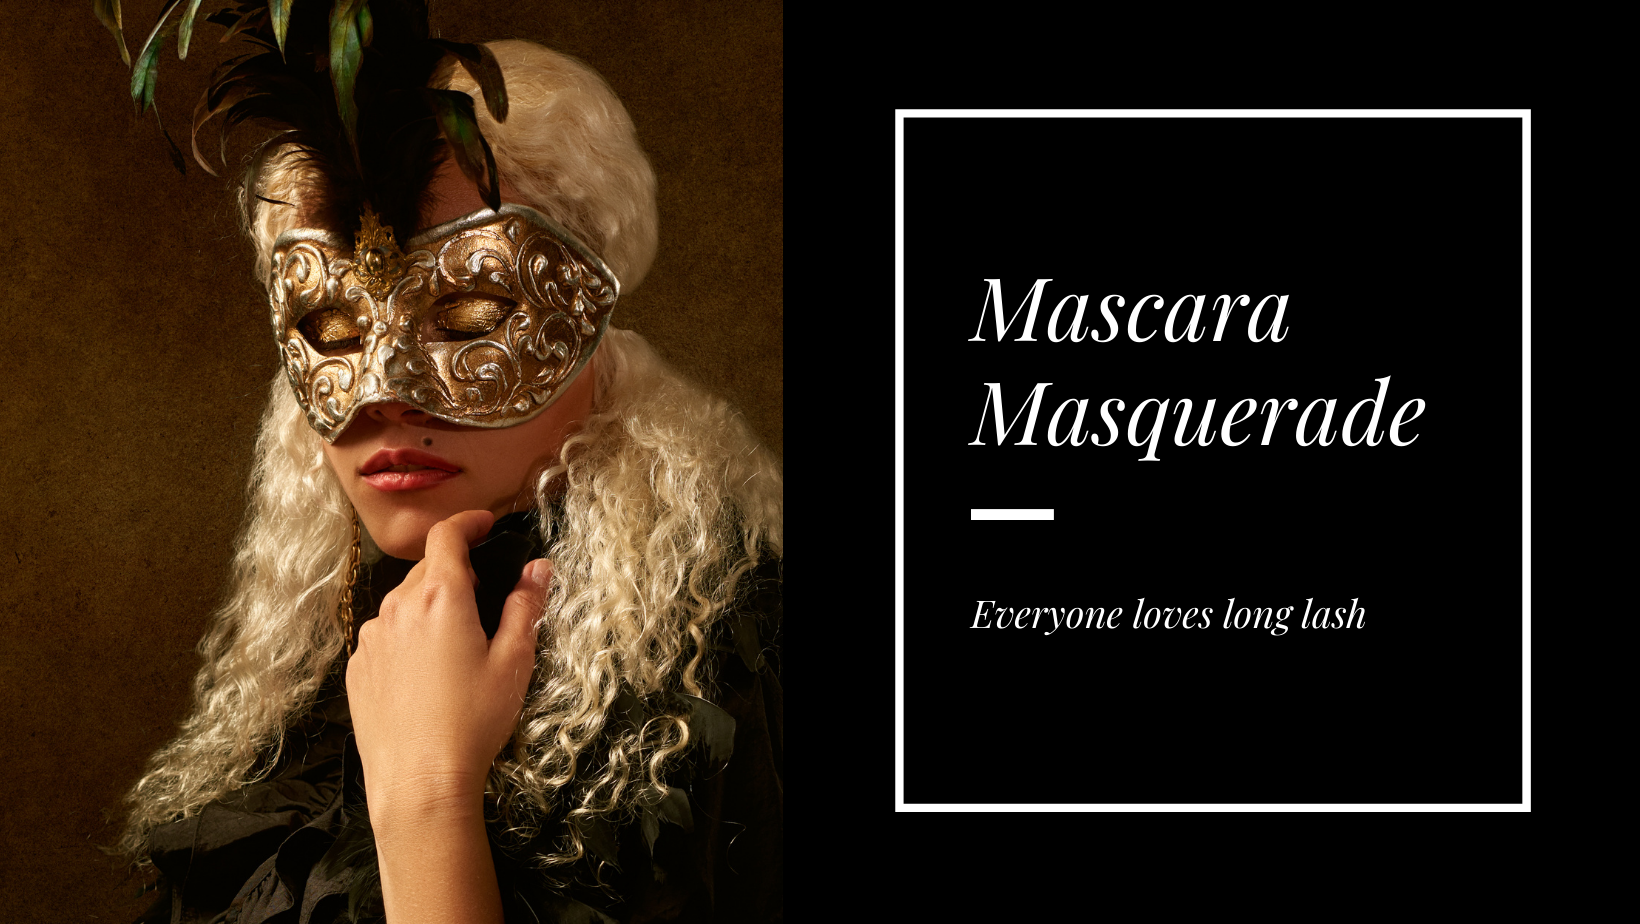 Masquerade_Mascara